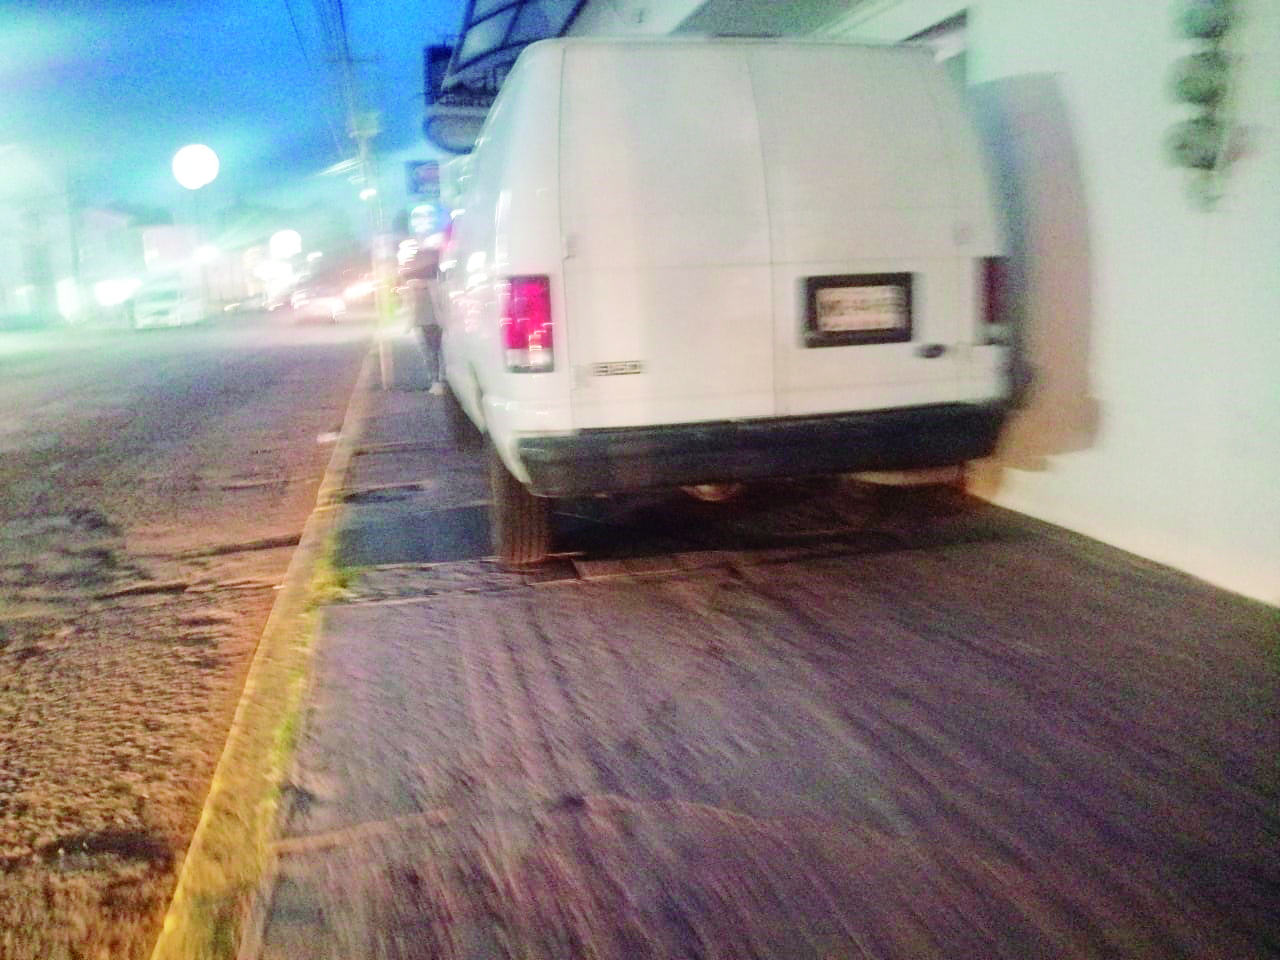 Vaya descaro del propietario o conductor de esta camioneta, que de plano dejó estacionada la camioneta sobre la acera de la calle de Lázaro Cárdenas, casi esquina con Juárez, sin importarle que bloqueó el espacio para que los peatones pasaran de manera segura.